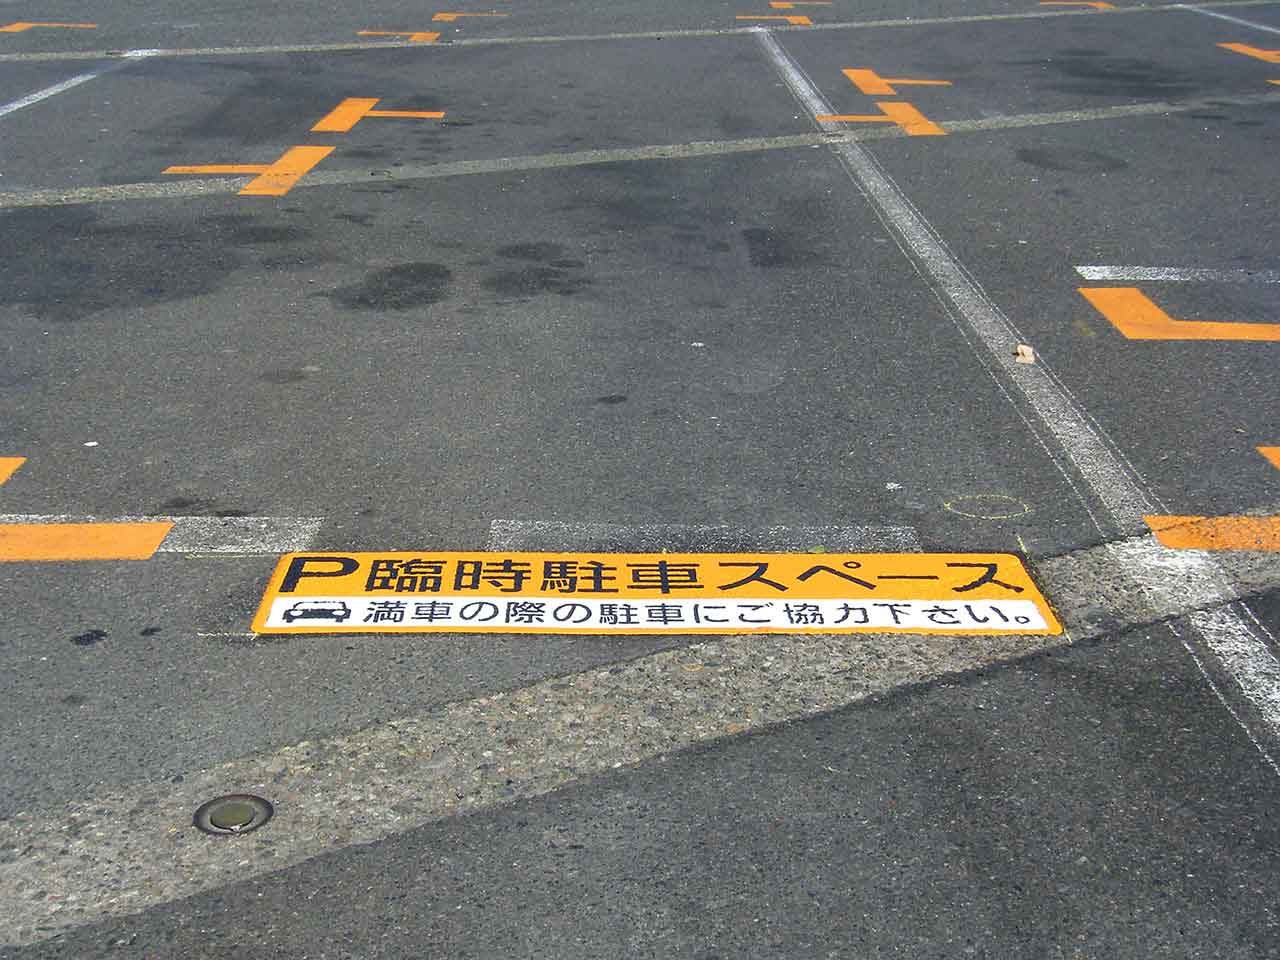 臨時駐車スペース